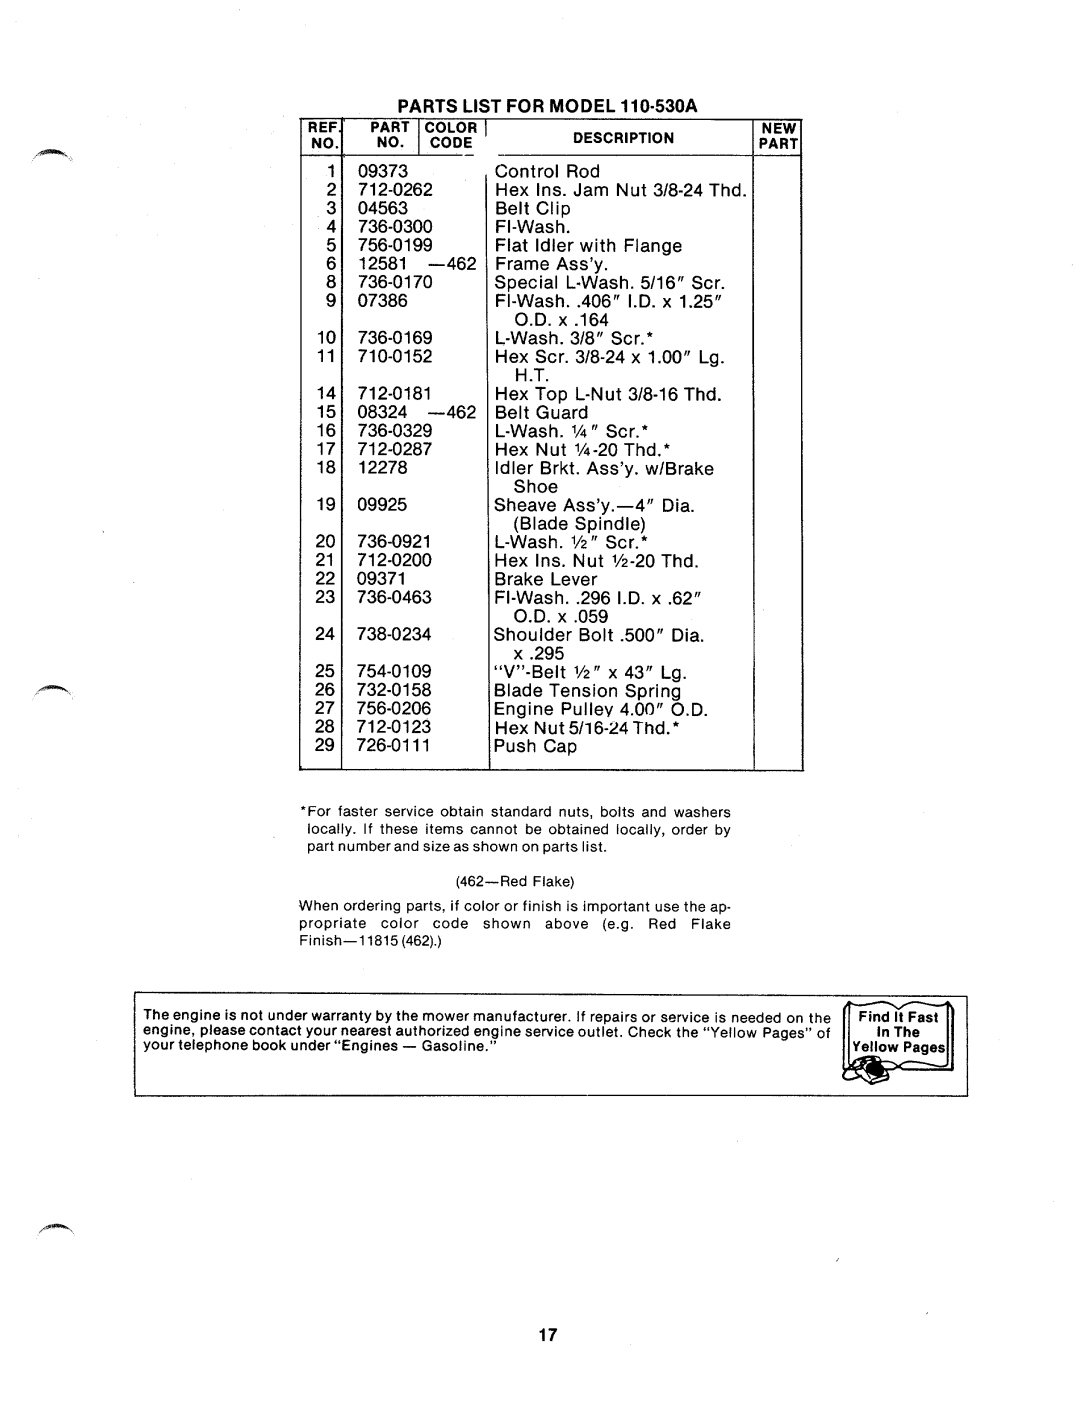 MTD 110-530A manual 